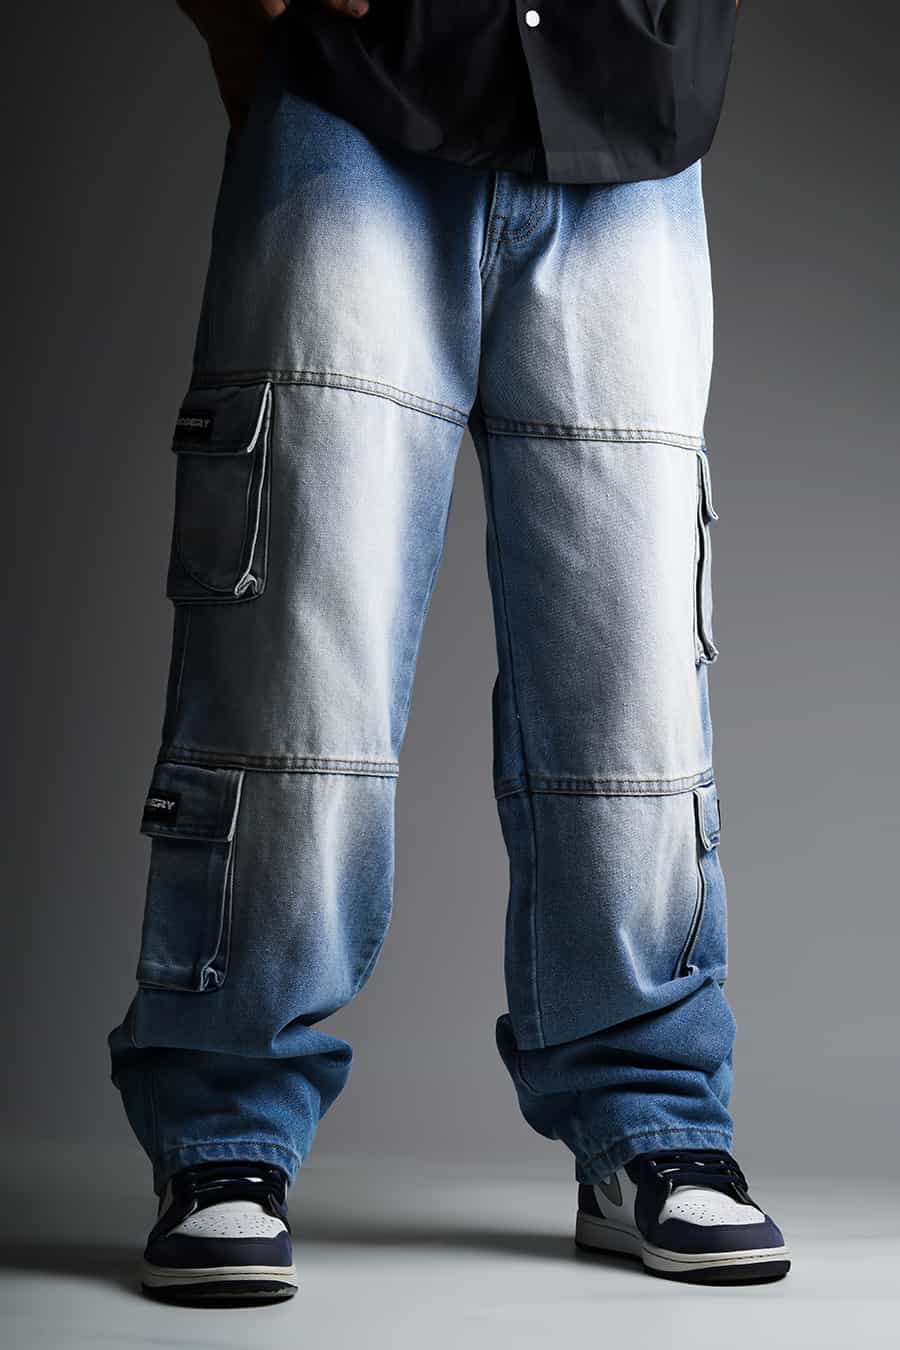 Arizona Jean Company Cargo Pocket Cargo Pants for Men | Mercari